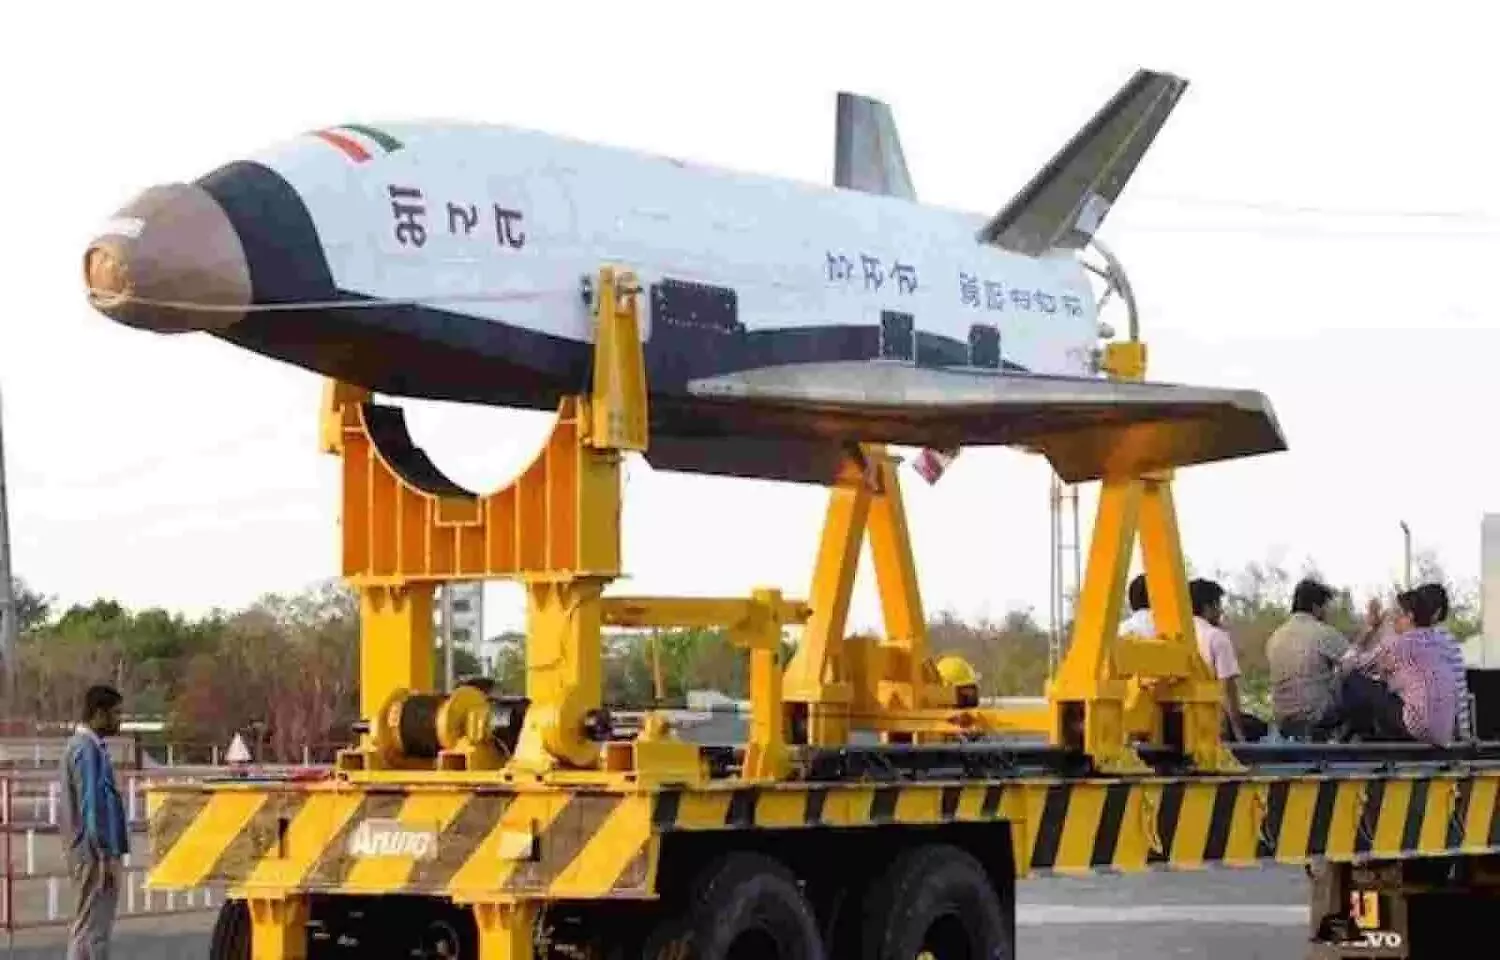 ISRO RLV: इसरो स्वदेशी स्पेस शटल बना रहा है जो सस्ता होगा और लॉन्च के बाद दोबारा भी इस्तेमाल किया जा सकेगा